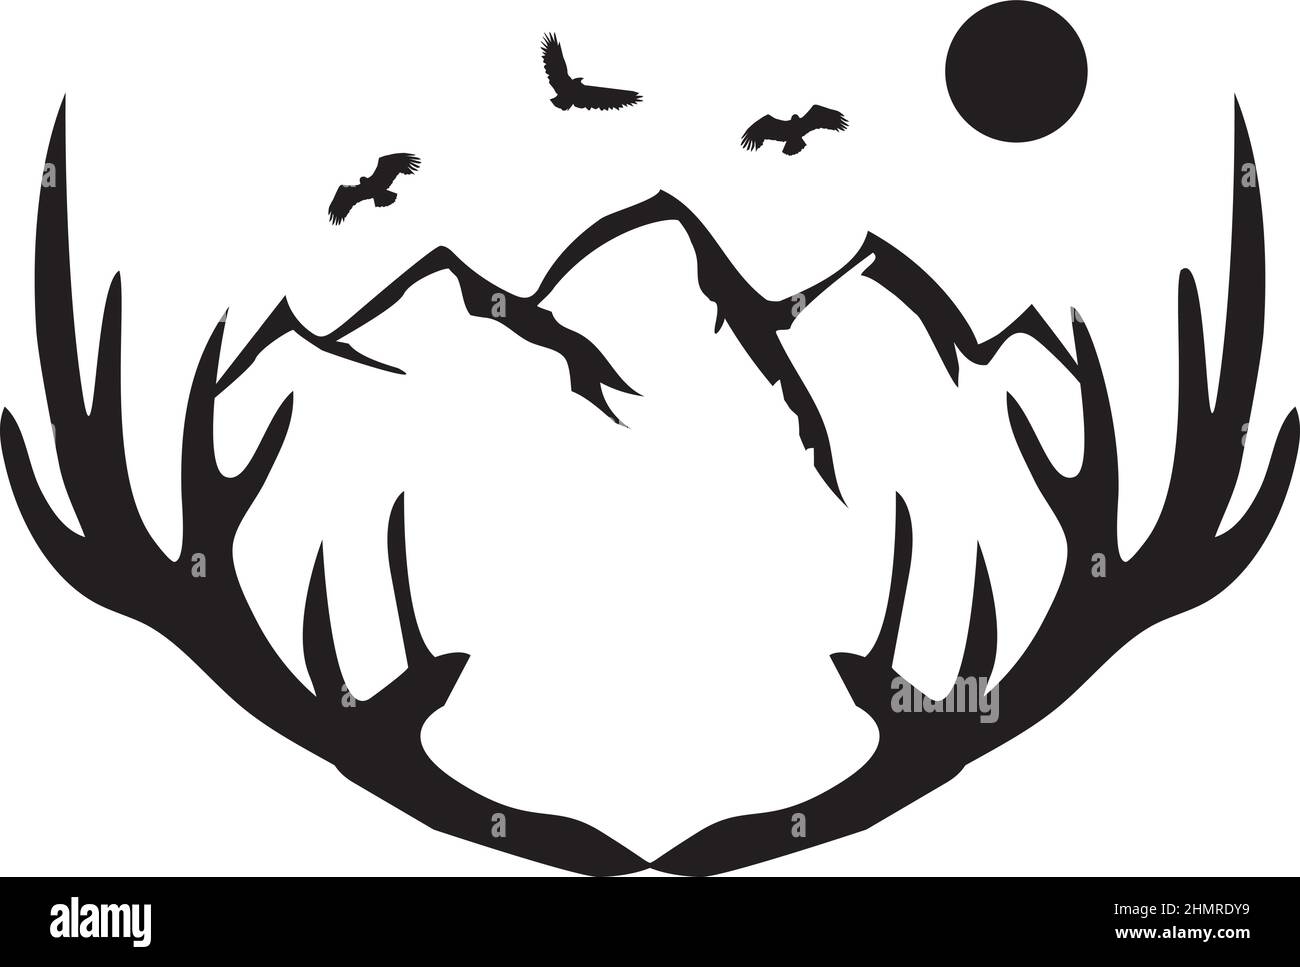 Illustrazione vettoriale di una formica di cervi con montagne, aquile, luna. Illustrazione Vettoriale